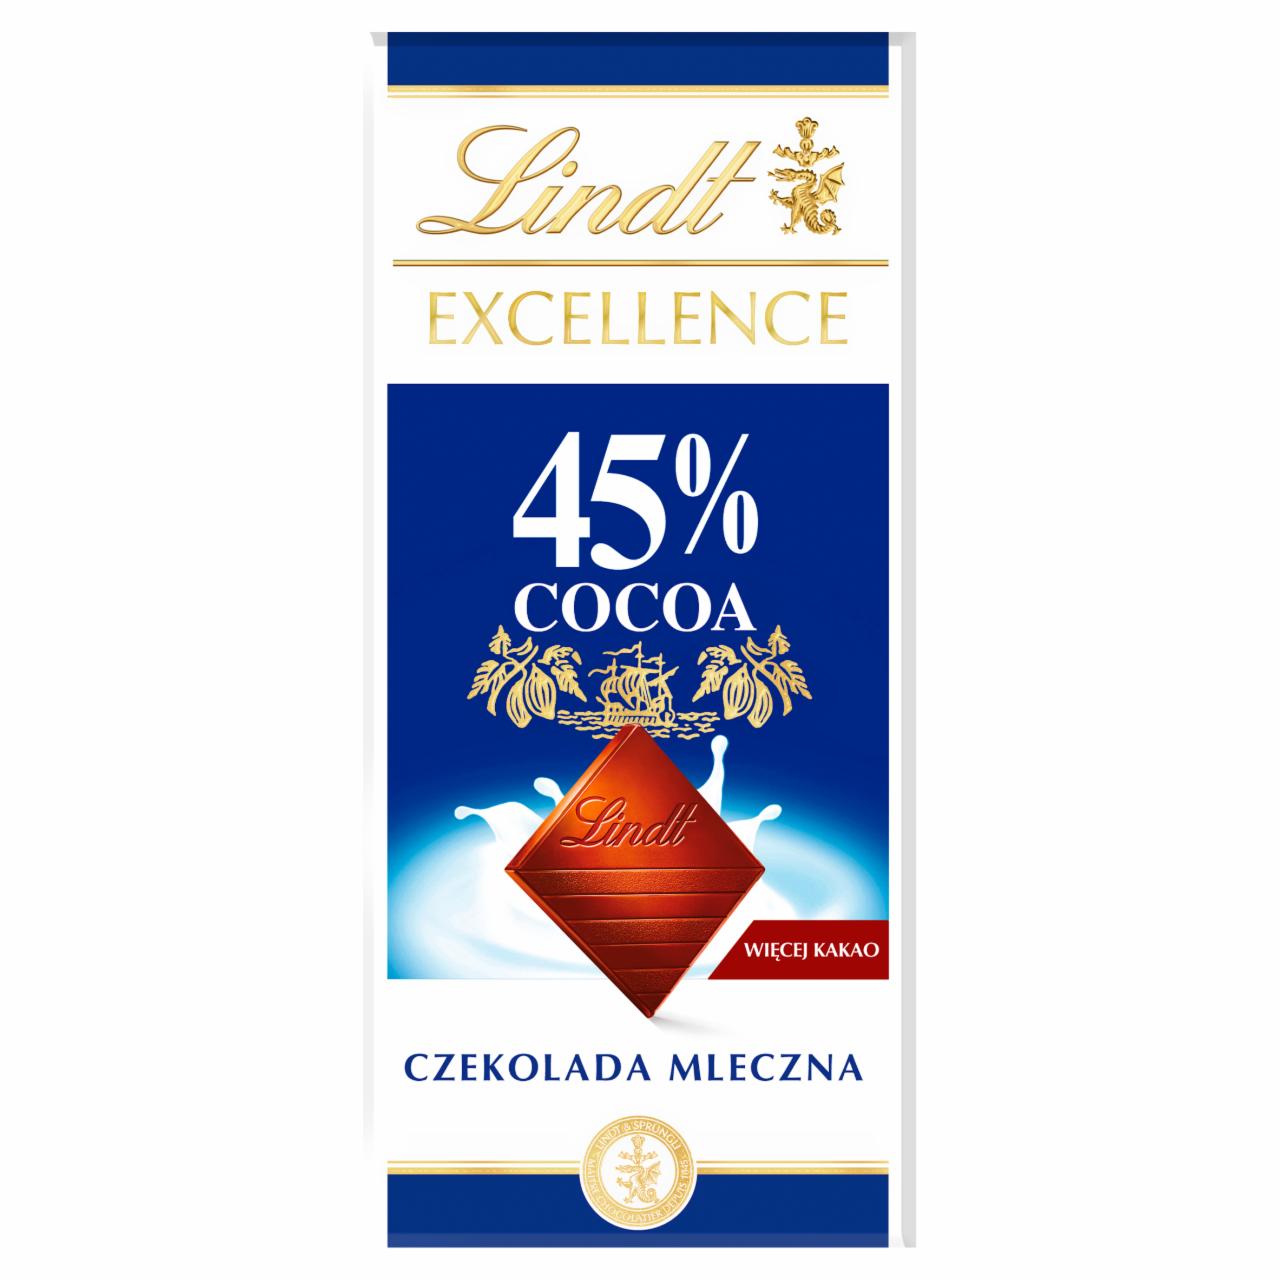 Zdjęcia - Lindt Excellence 45 % Cocoa Czekolada mleczna 80 g